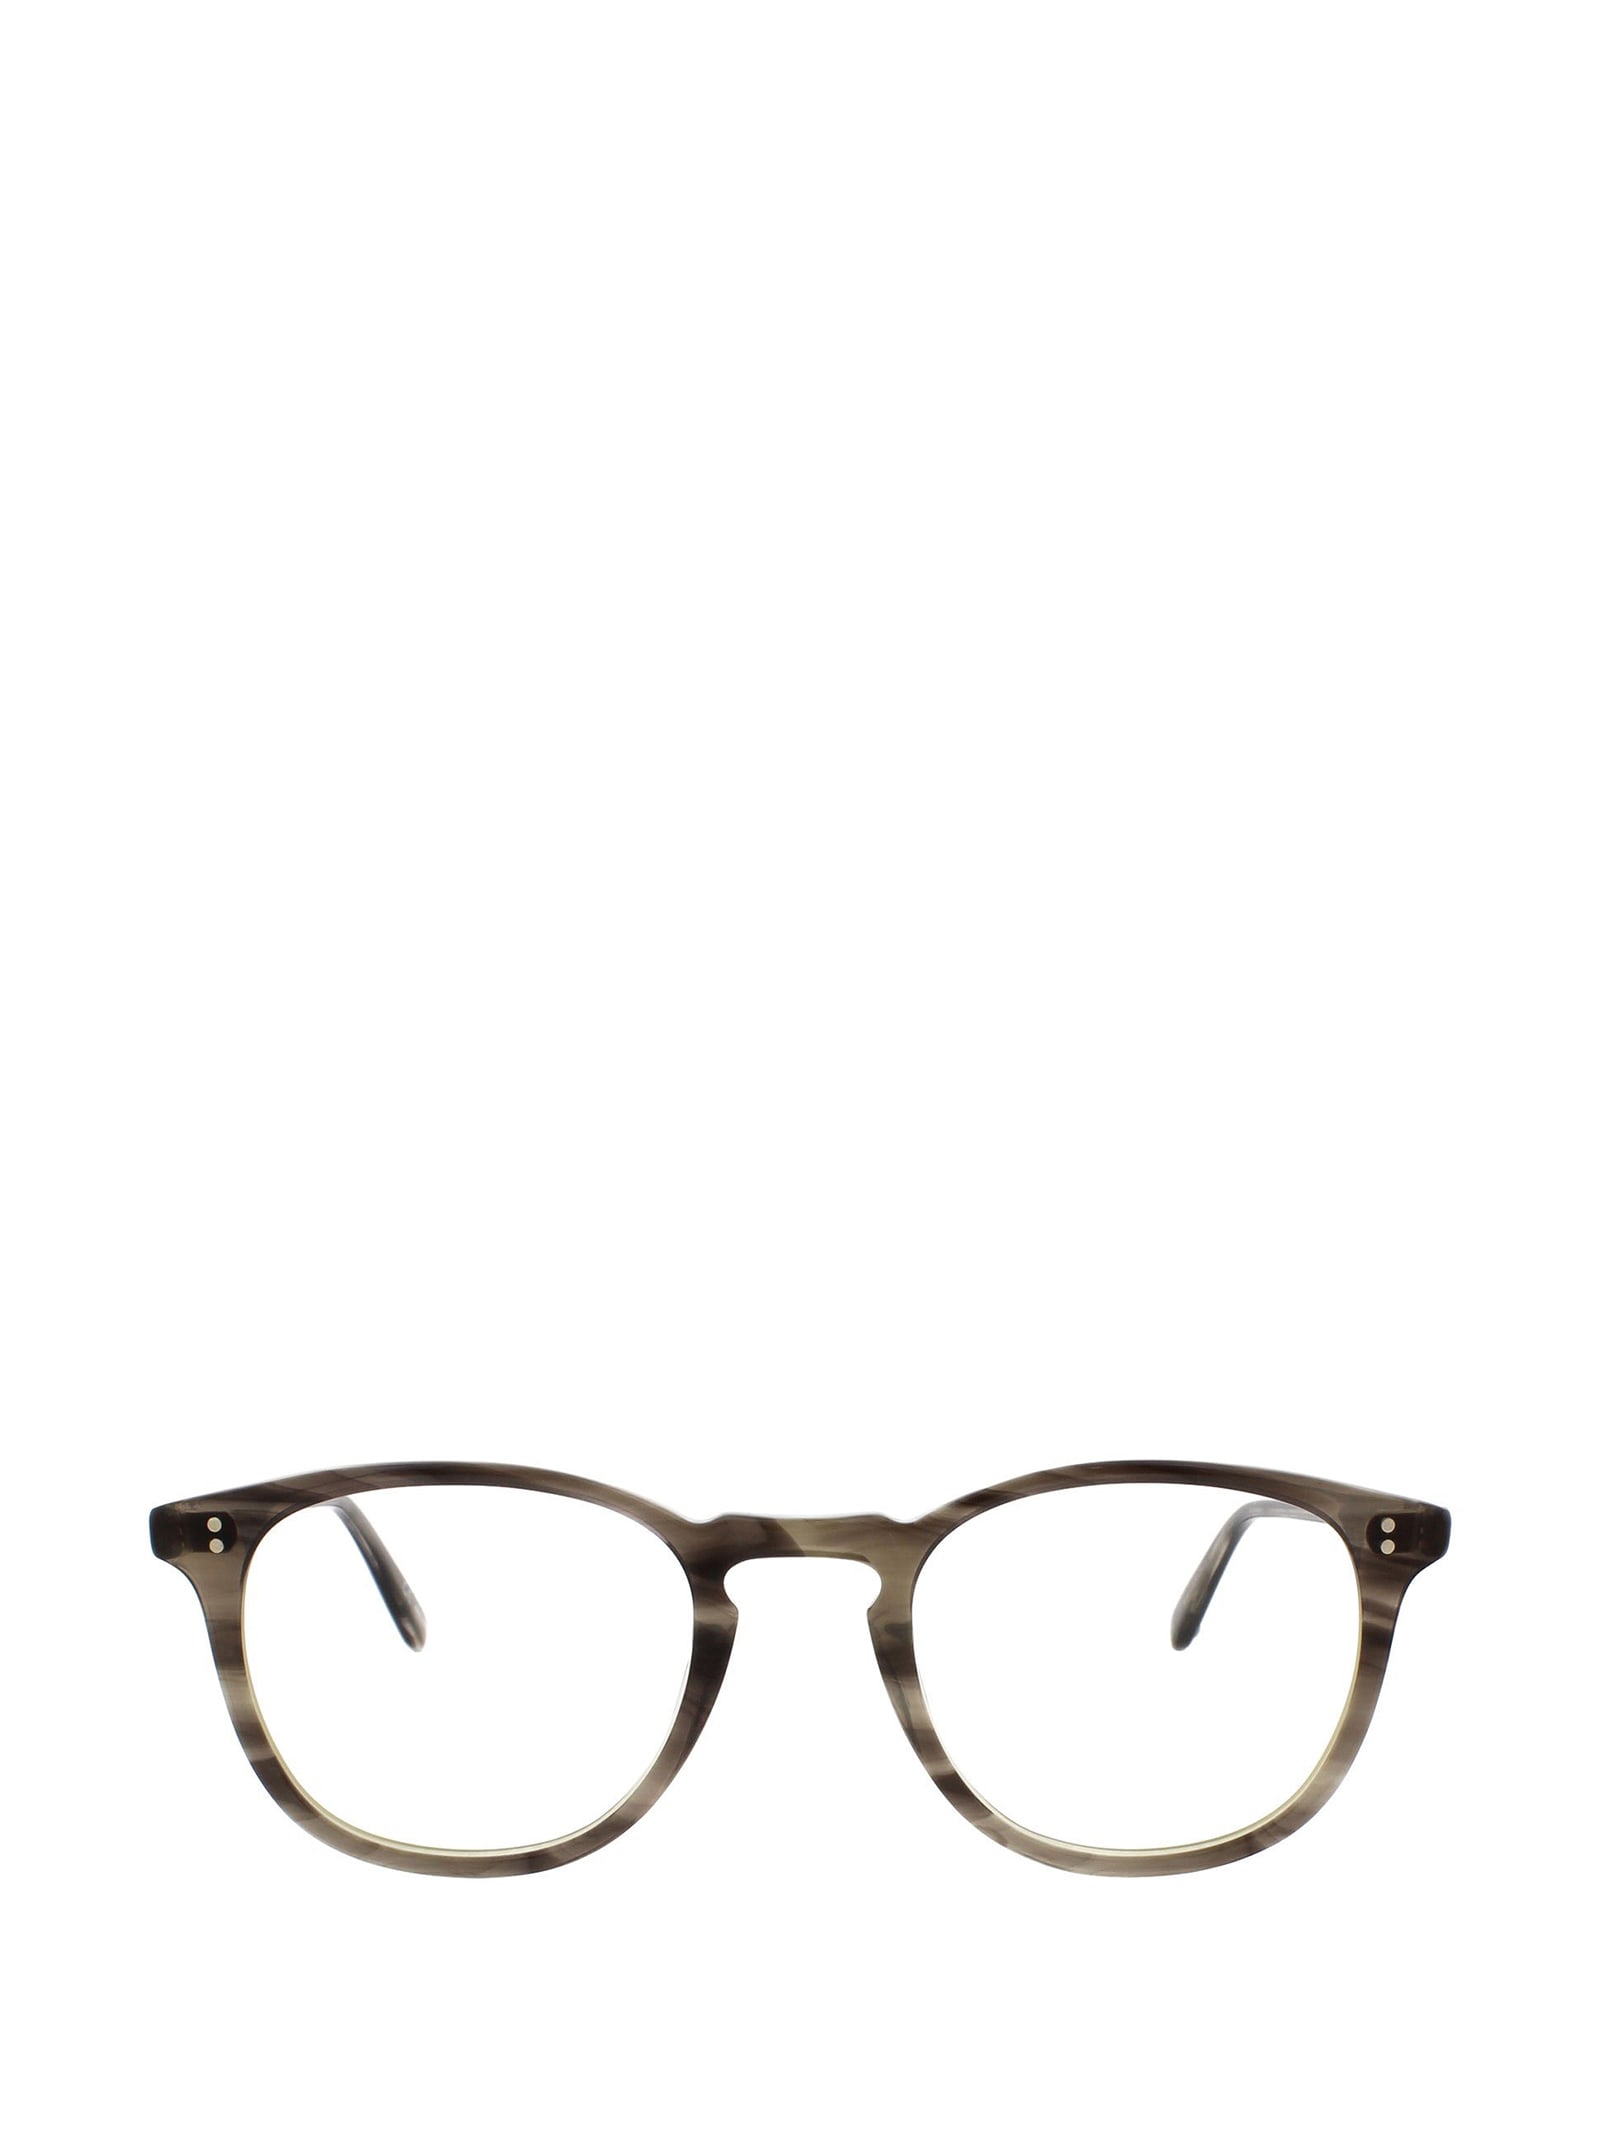 Kinney G.i. Tortoise Laminate Glasses